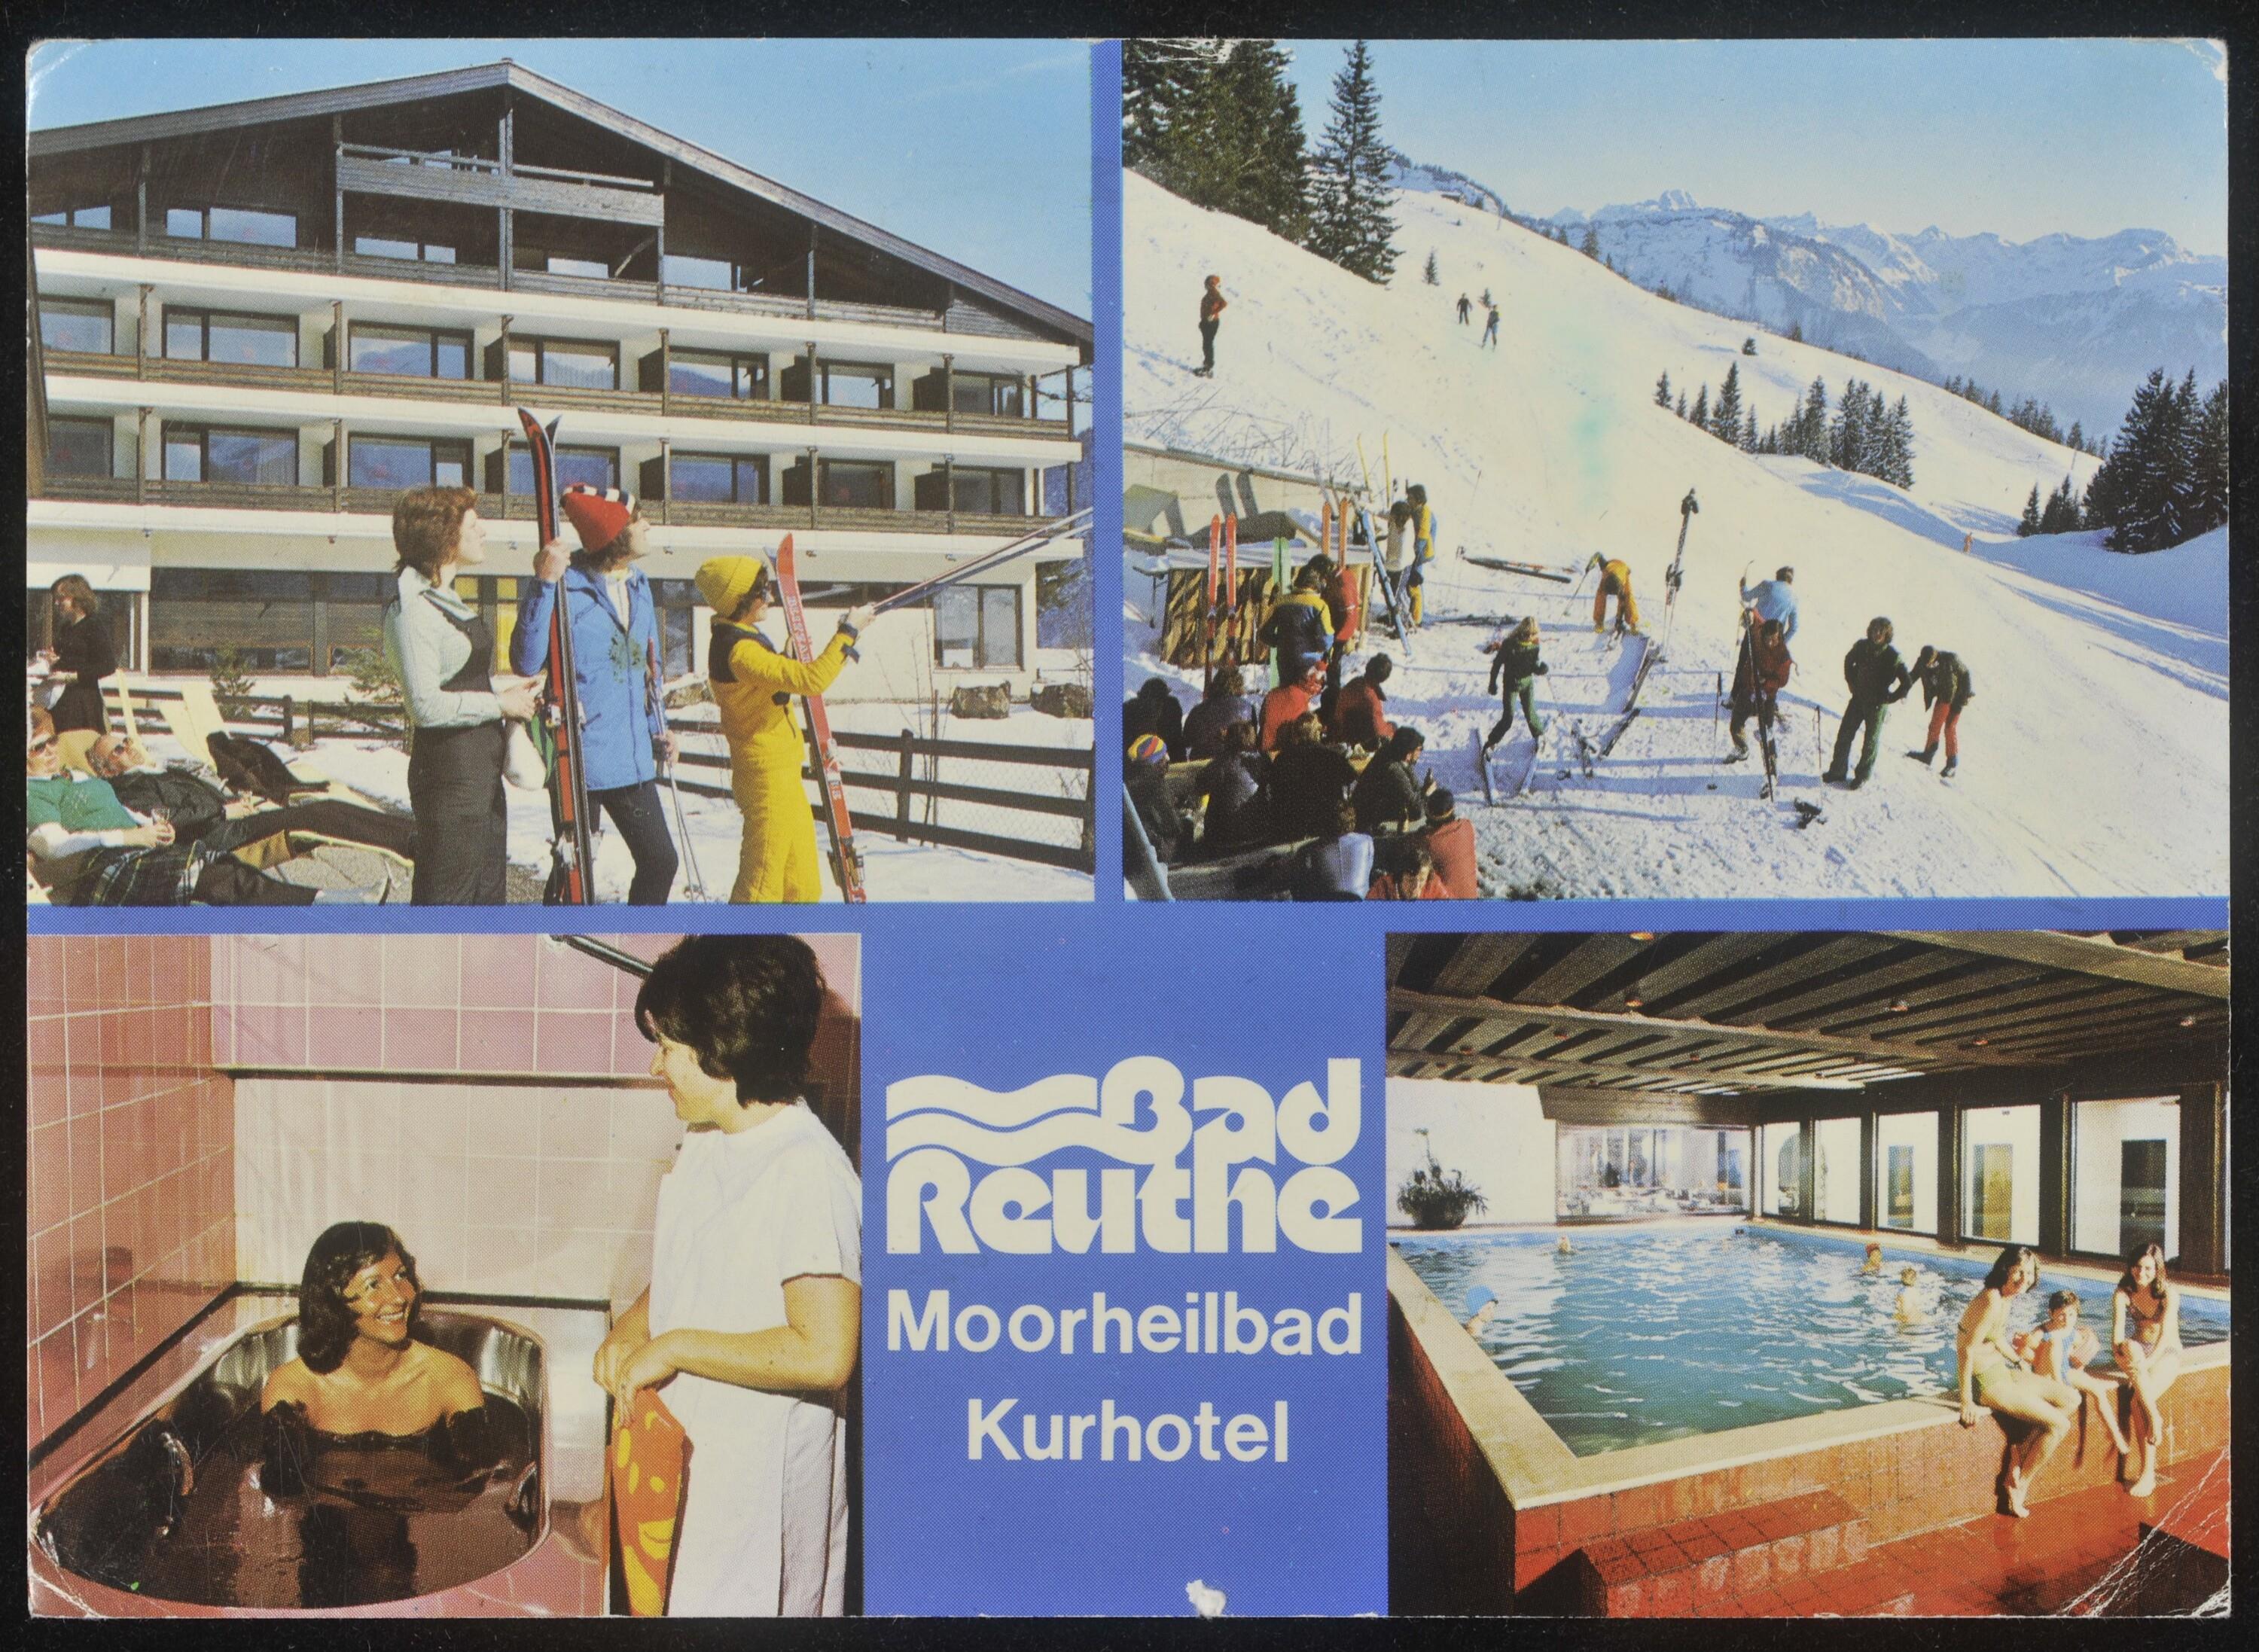 [Reuthe] Bad Reuthe Moorheilbad Kurhotel></div>


    <hr>
    <div class=